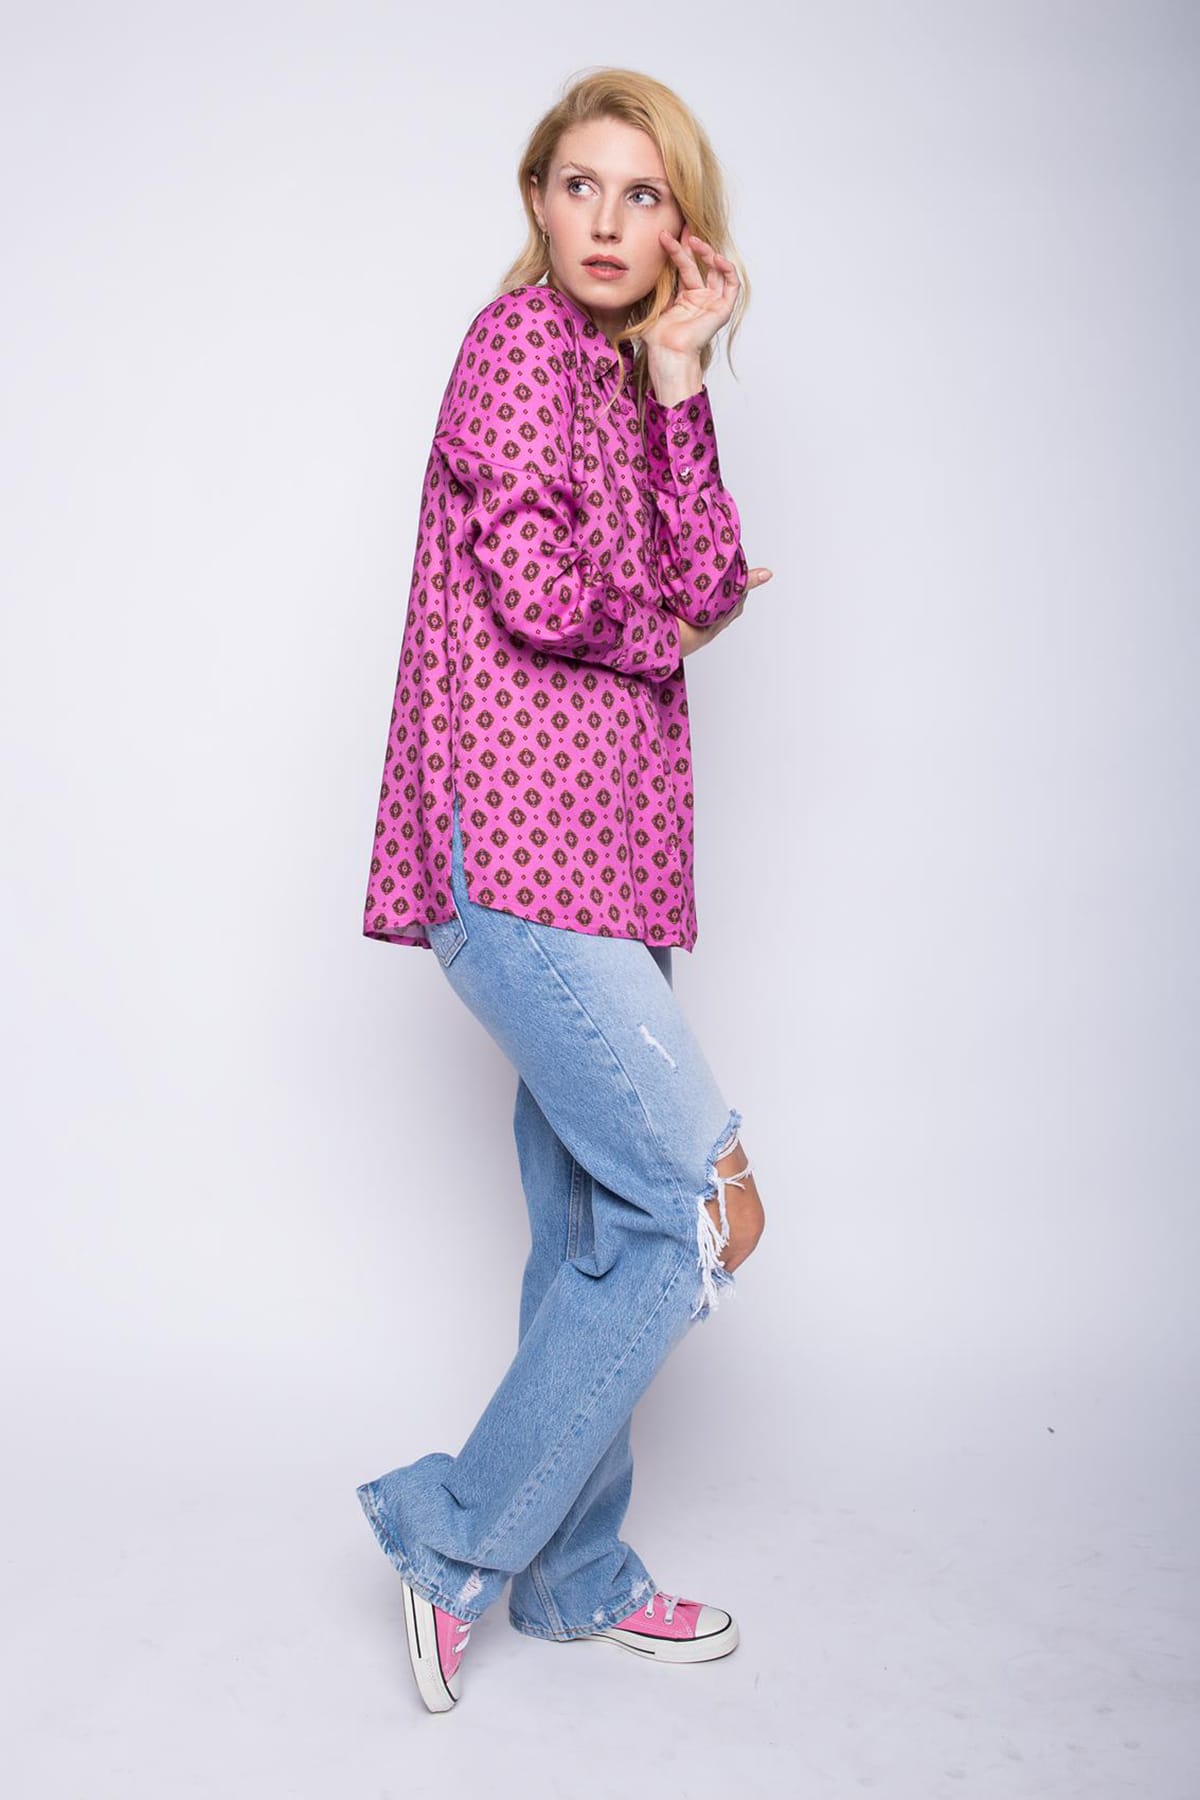 Blusen Moderne, weite Hemdbluse mit Retro Krawatten Muster pink minimal Blusen Emily van den Bergh 